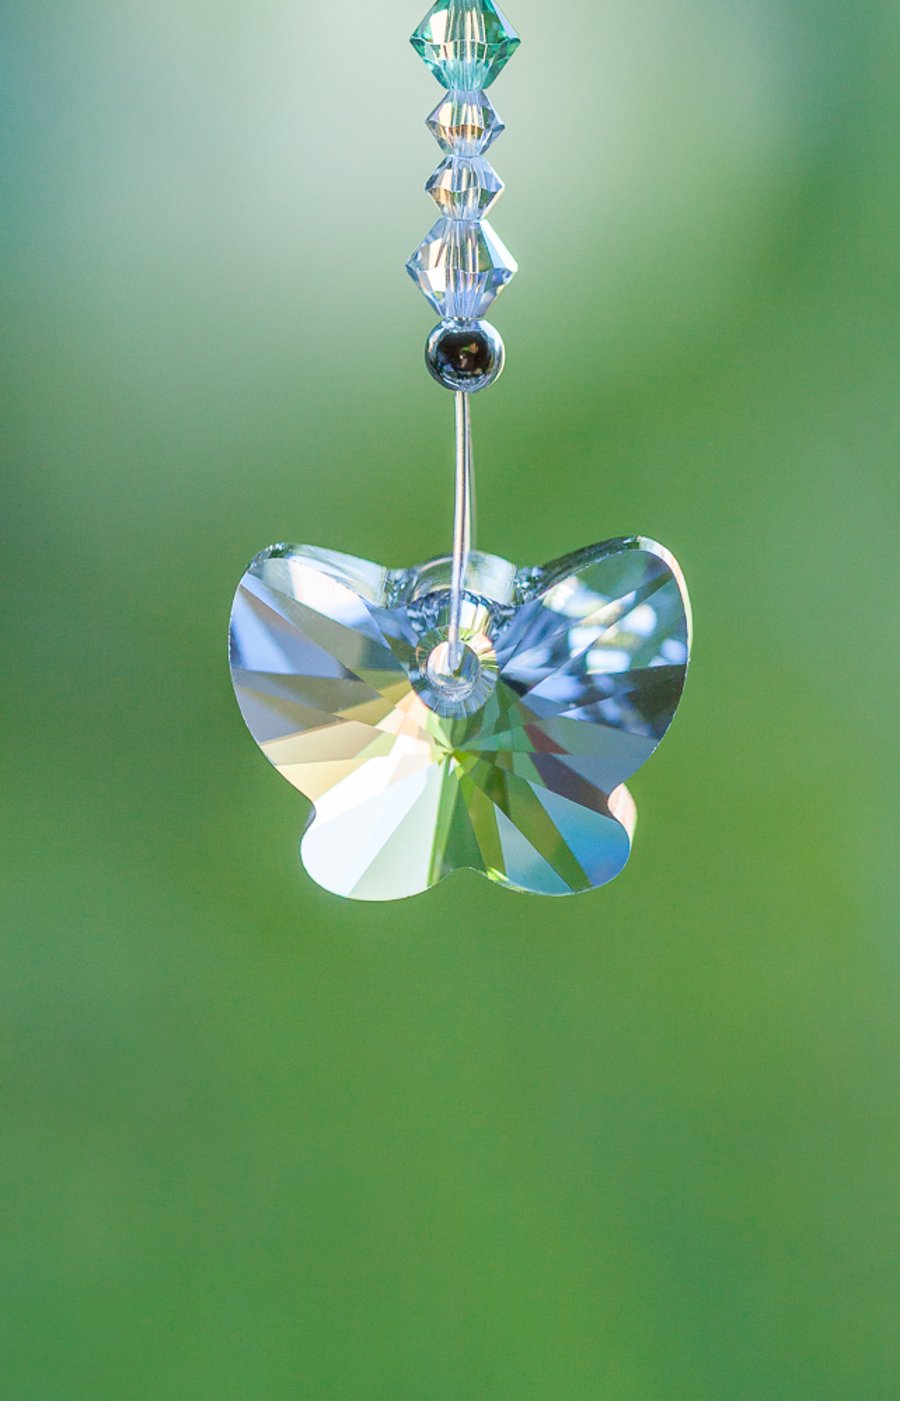 Swarovski crystal Butterfly sun-catcher